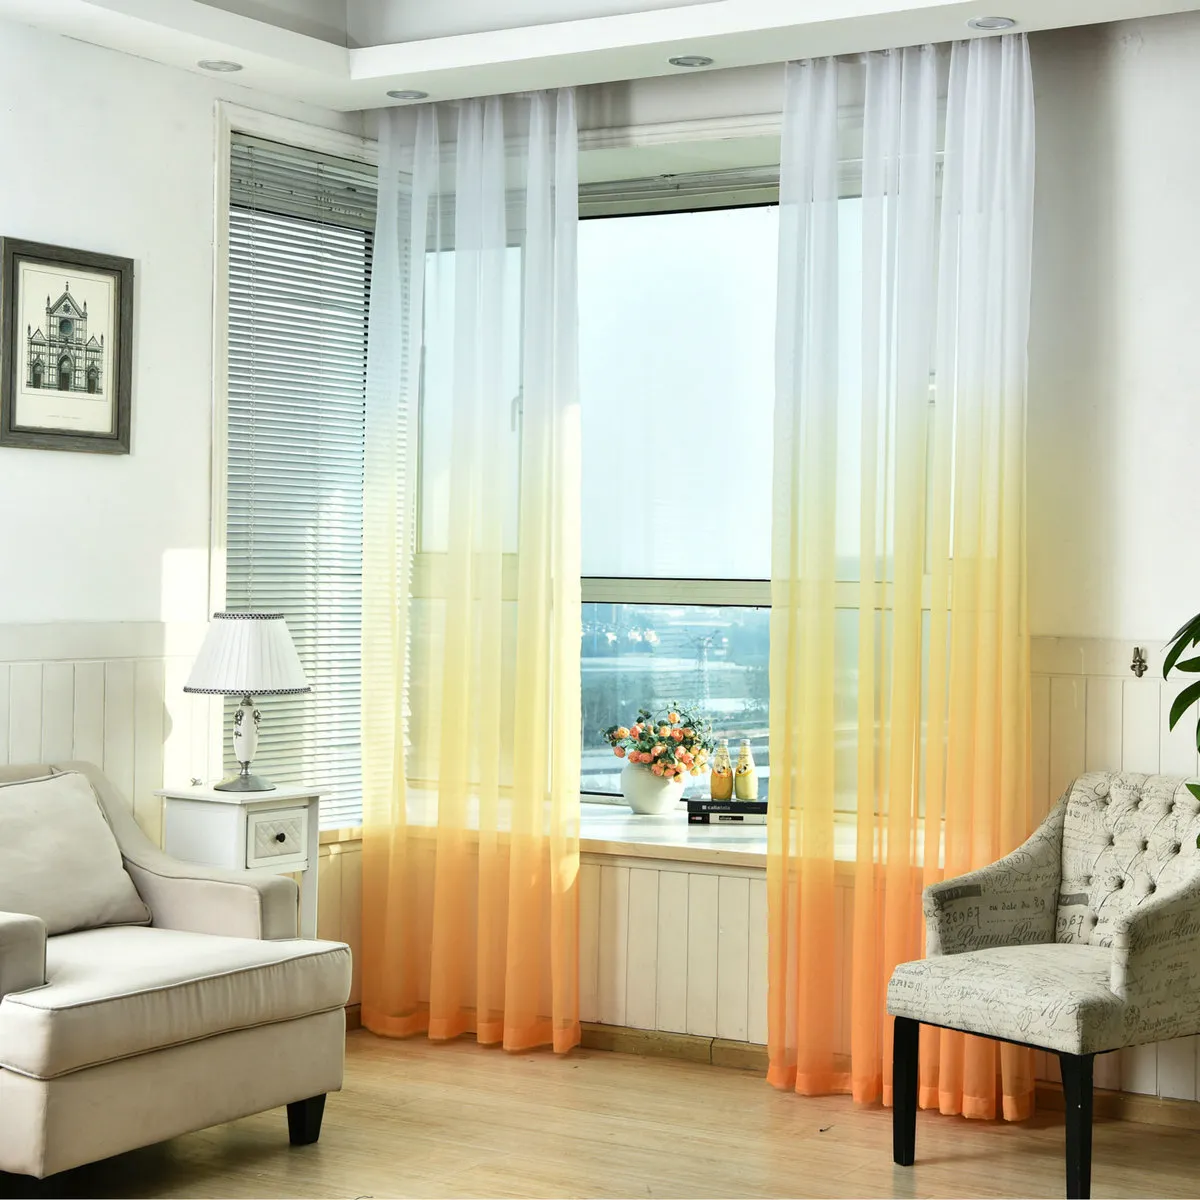 Ren tyllfönster gardin för vardagsrum köket modernt mönster med ljus färg för fönster dekoration minimalistisk style1108625